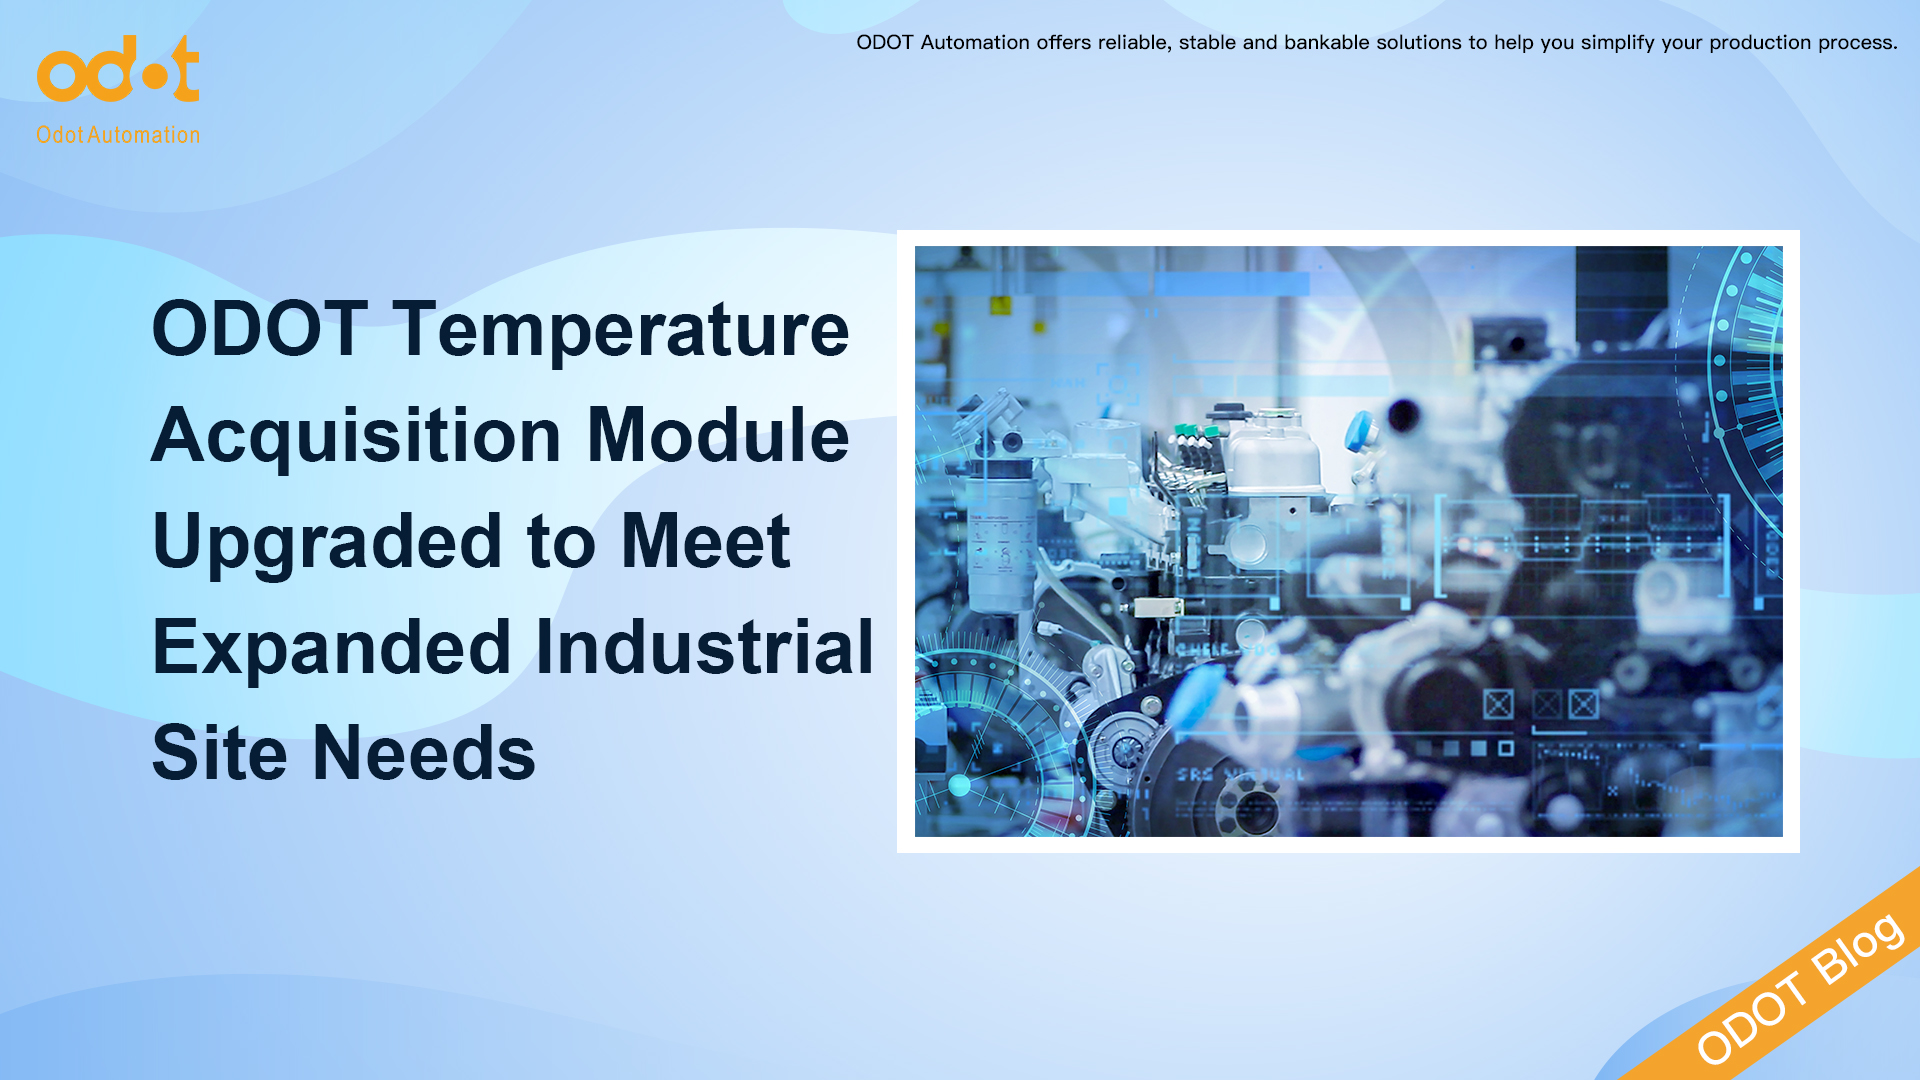 Η μονάδα ODOT Temperature Acquisition αναβαθμίστηκε για να καλύψει τις ανάγκες διευρυμένης βιομηχανικής τοποθεσίας